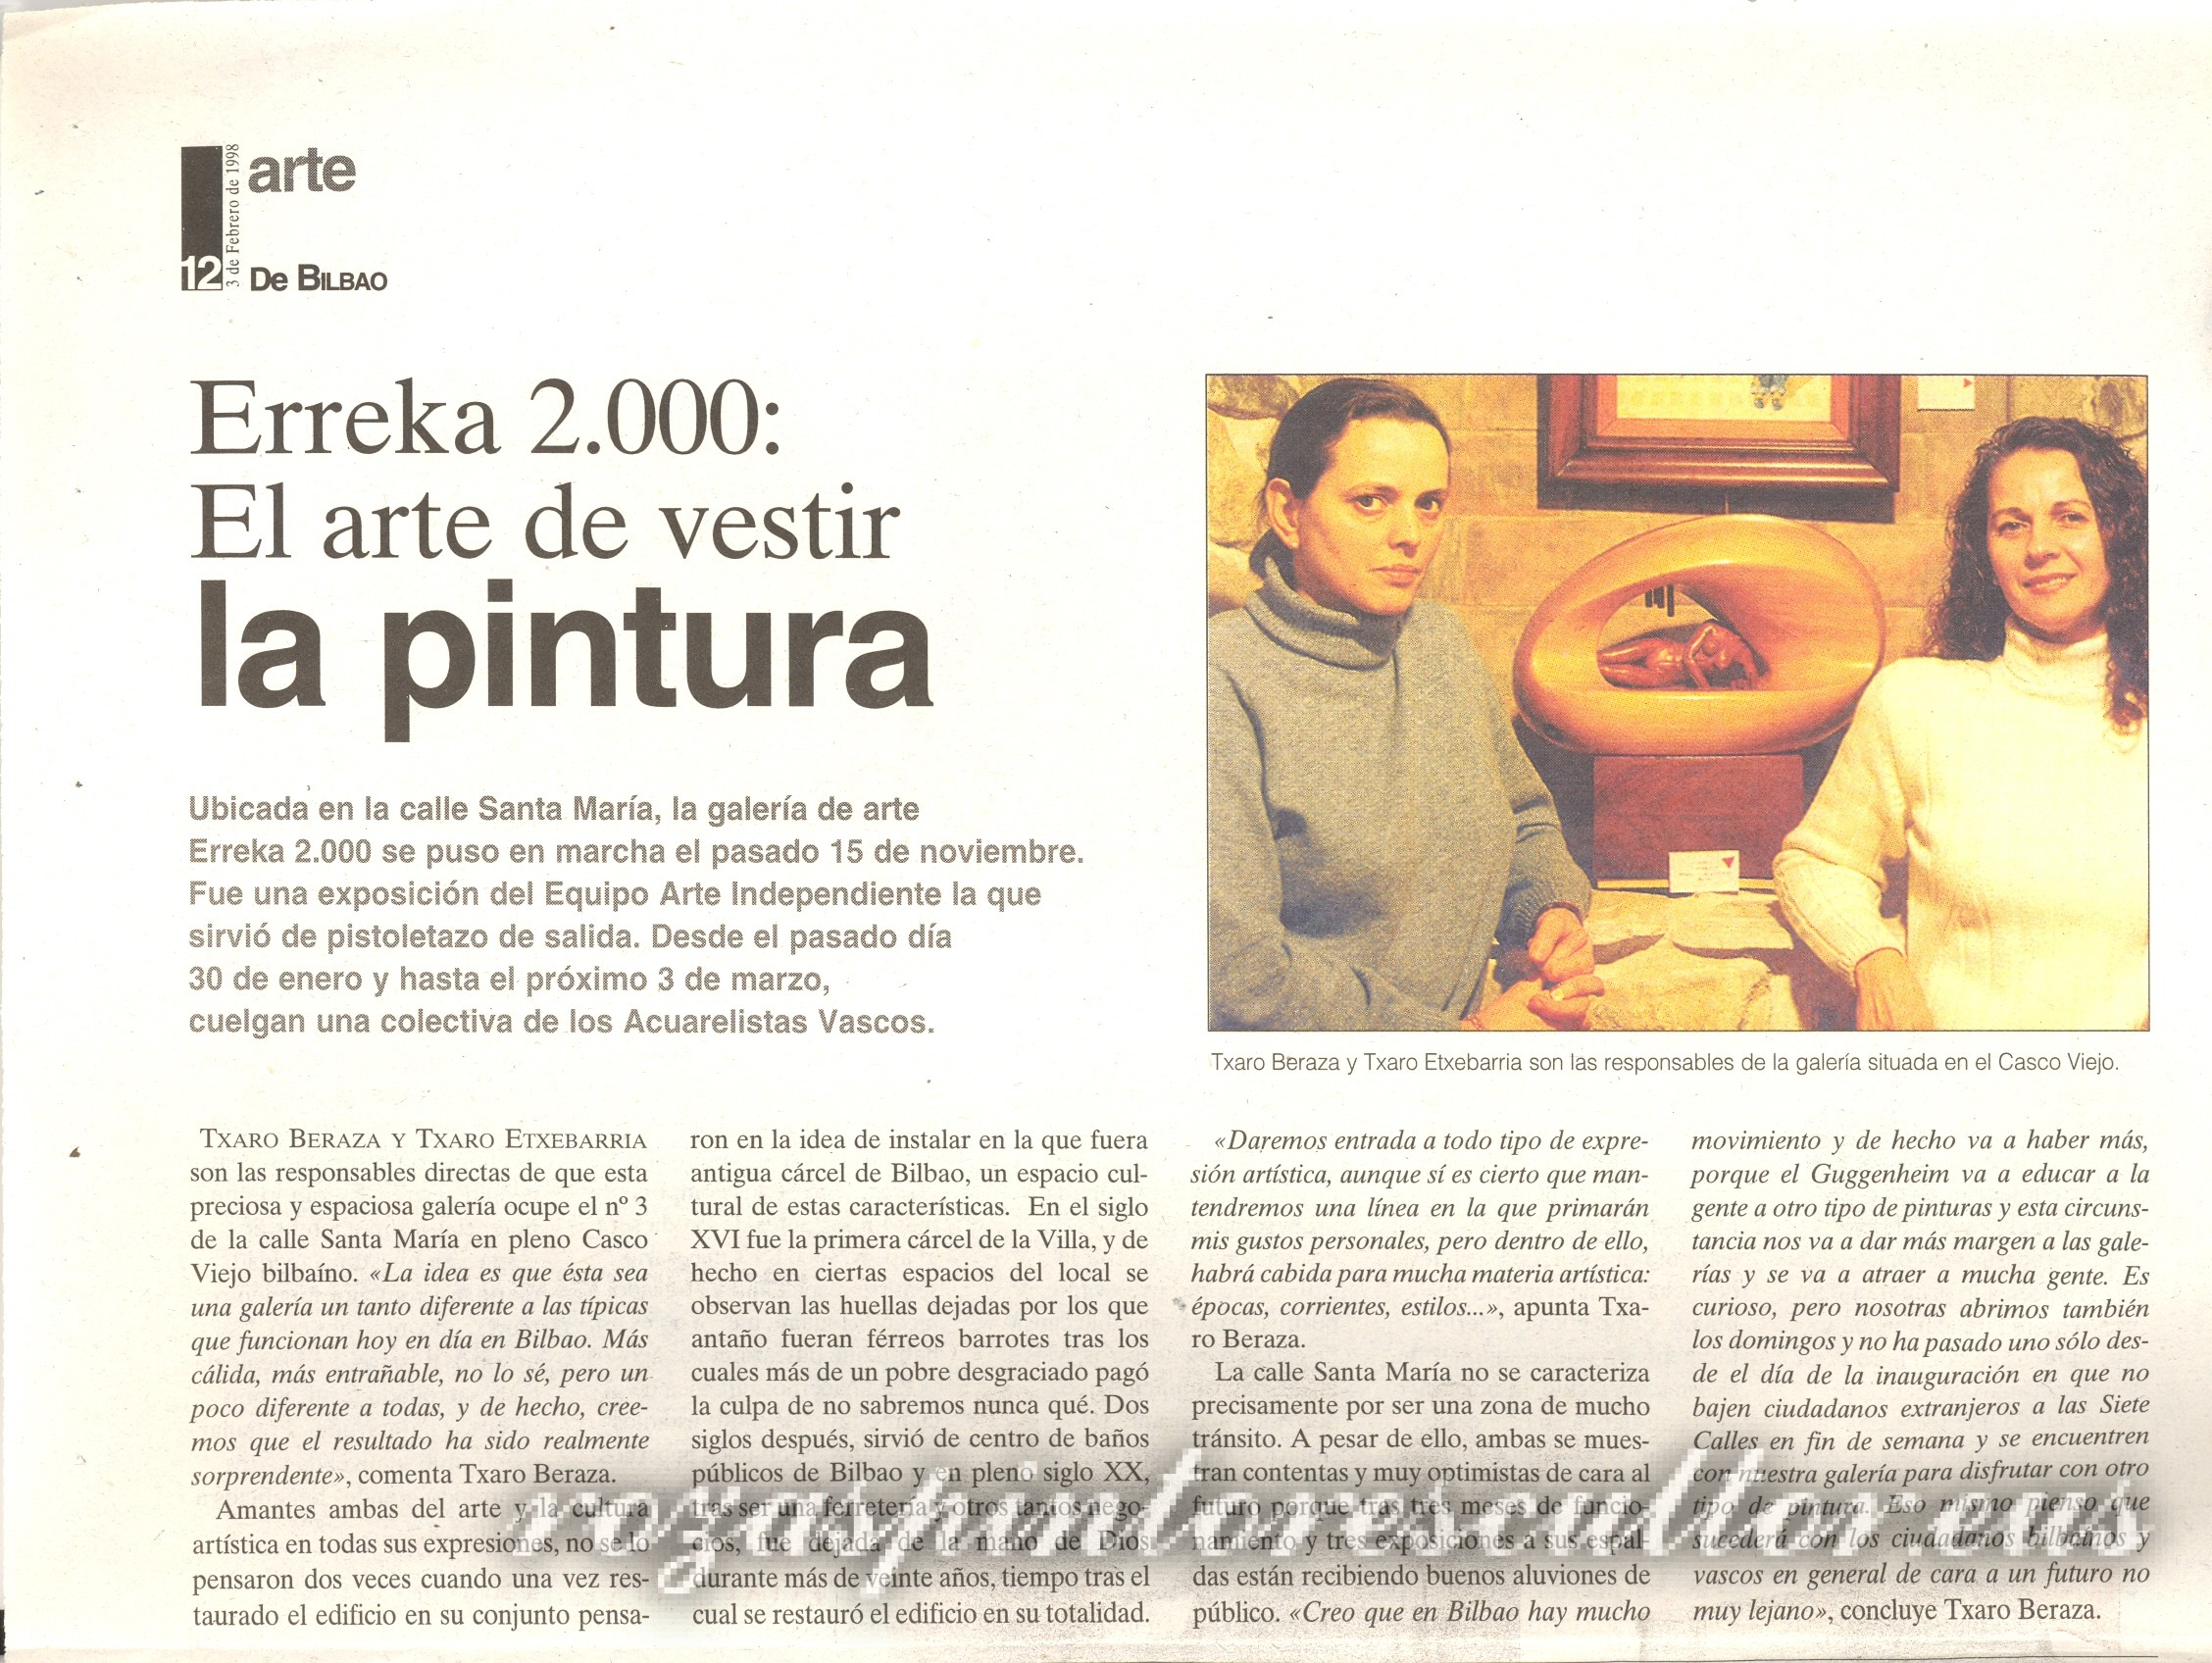 1998 Bilbao – Erreka 2000: El arte de vestir la pintura